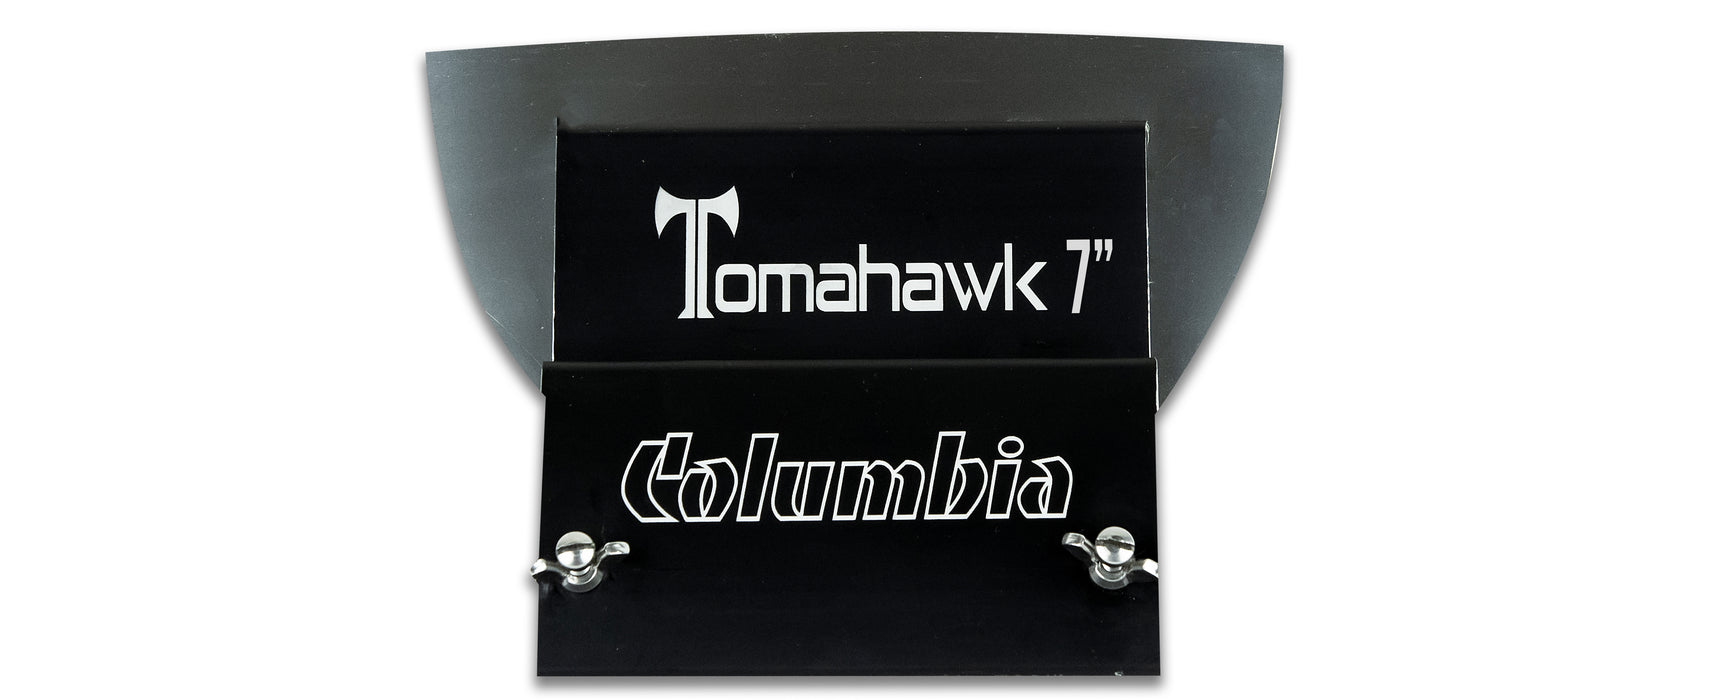 Couteau de finition Columbia Tomahawk